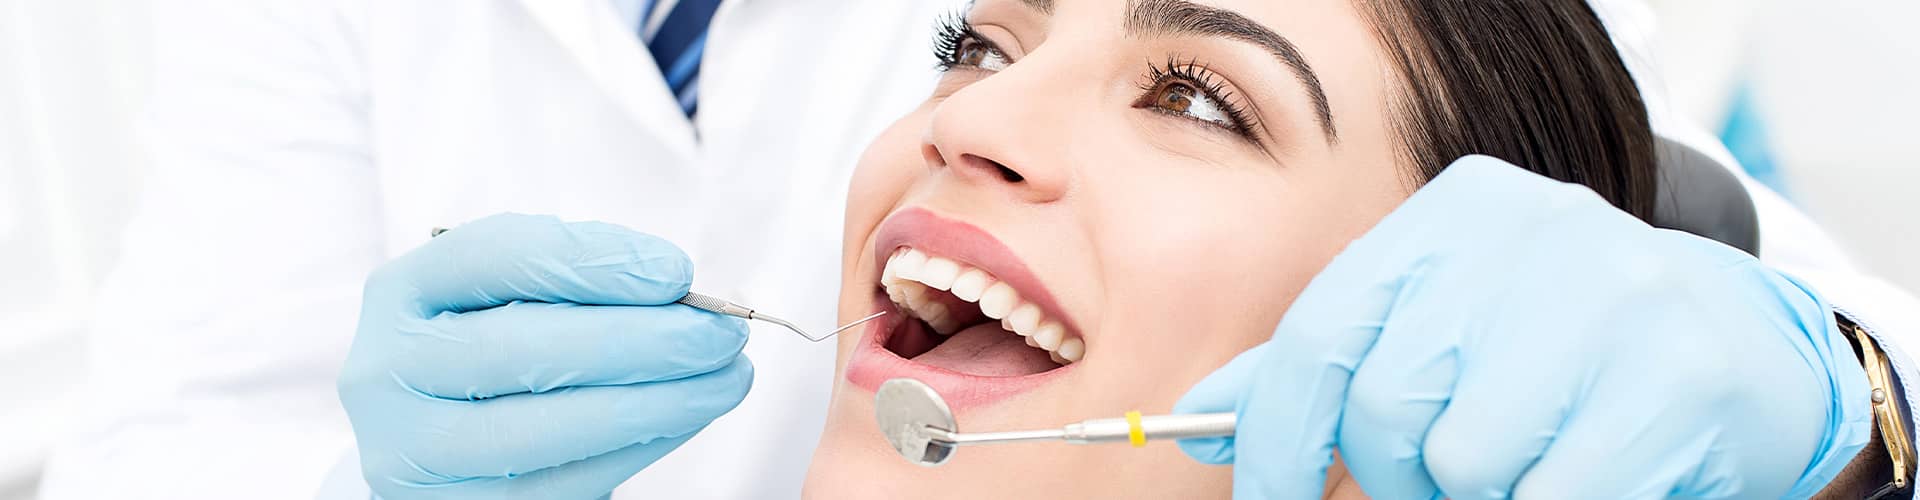 Biological Dentistry Banner Image